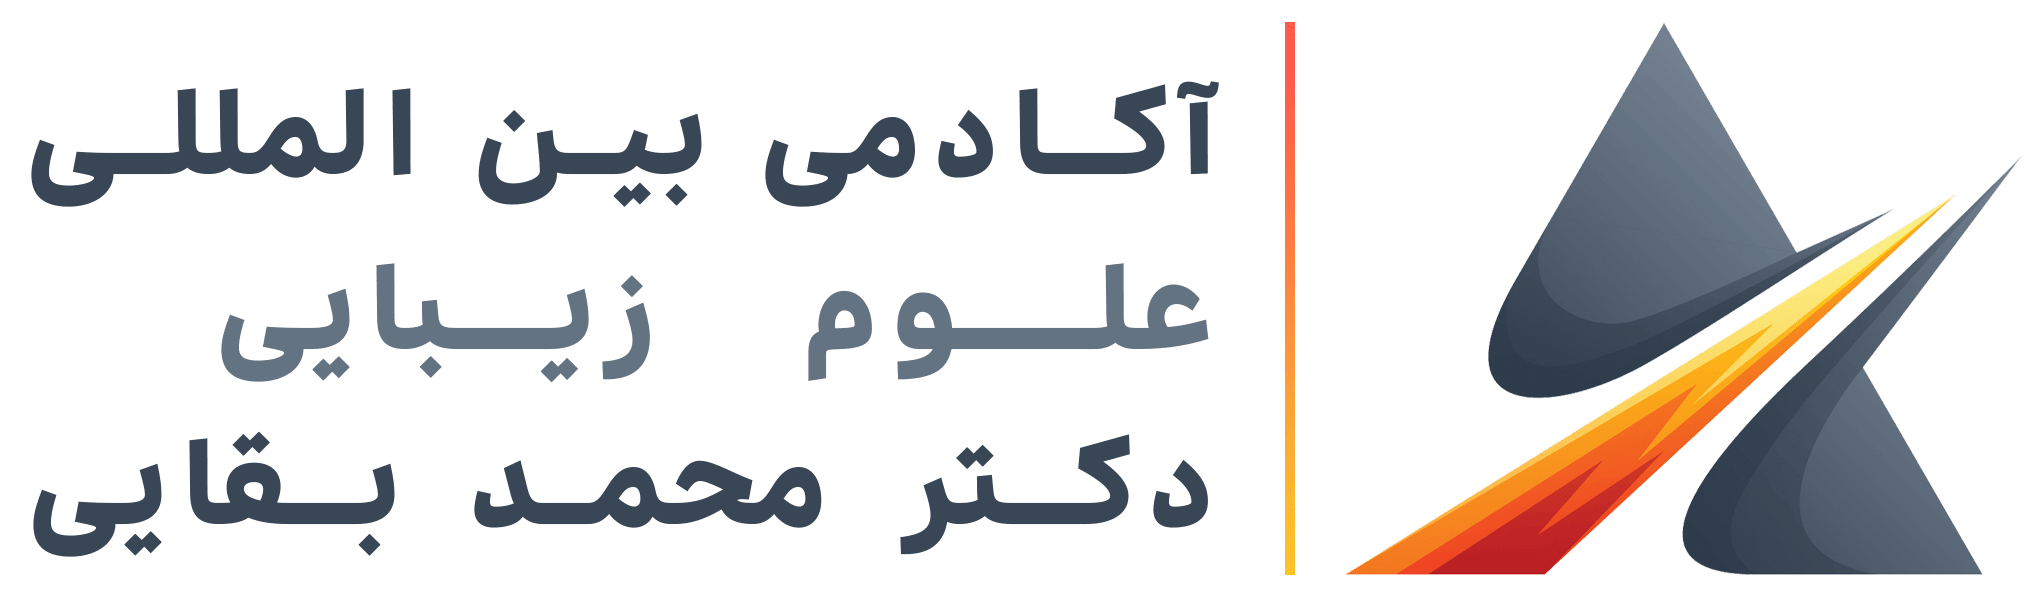 logo academy persian